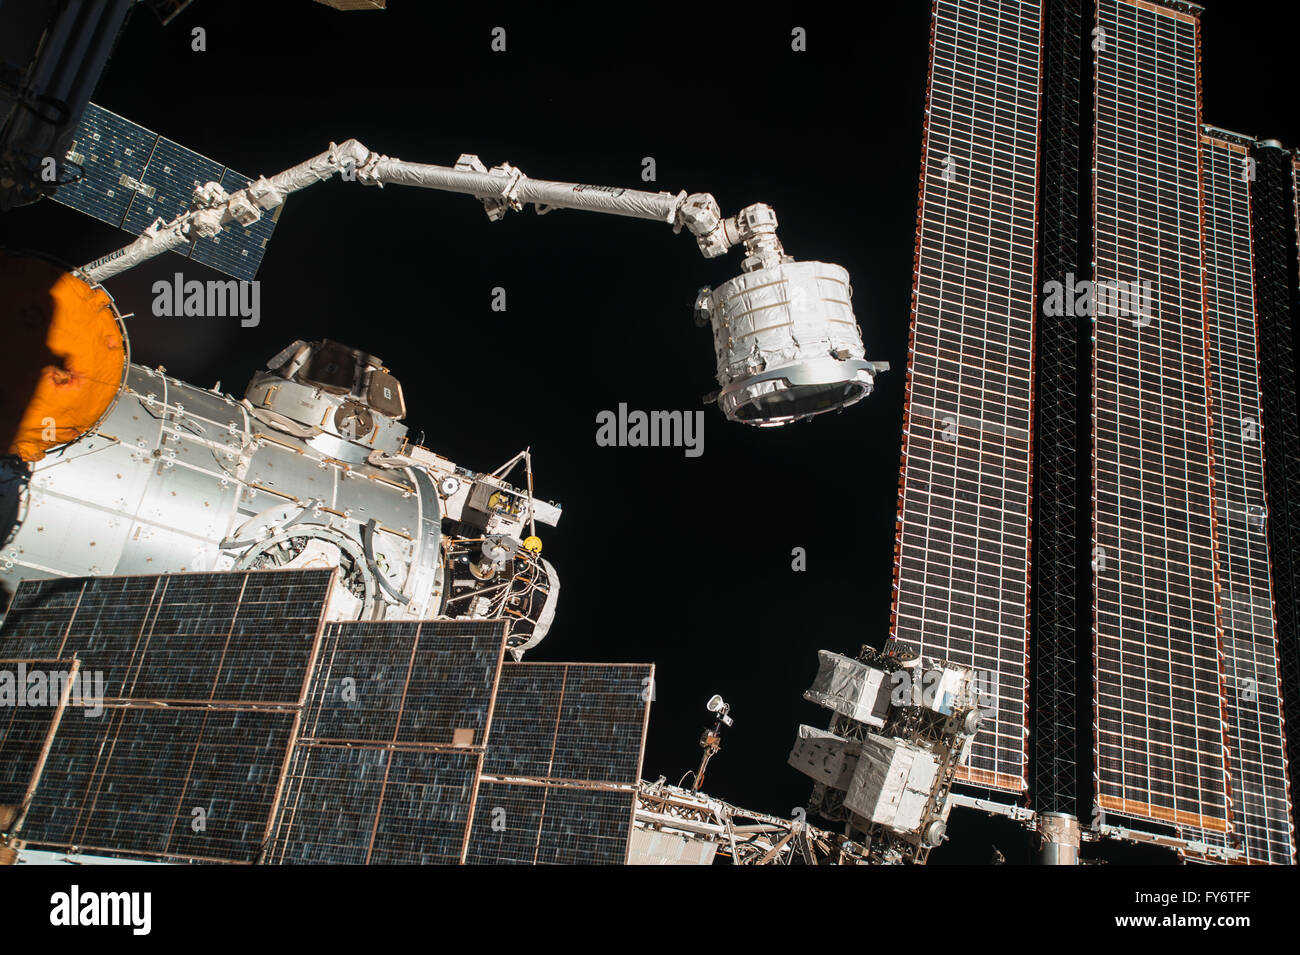 Stazione spaziale internazionale gli astronauti usano la robotica Canadarm2 per spostare la Bigelow espandibile modulo Attività in posizione in quanto è installato Aprile 16, 2016 in orbita intorno alla terra. La sperimentale modulo espandibile è stata attaccata alla porta di poppa del modulo di tranquillità. Foto Stock